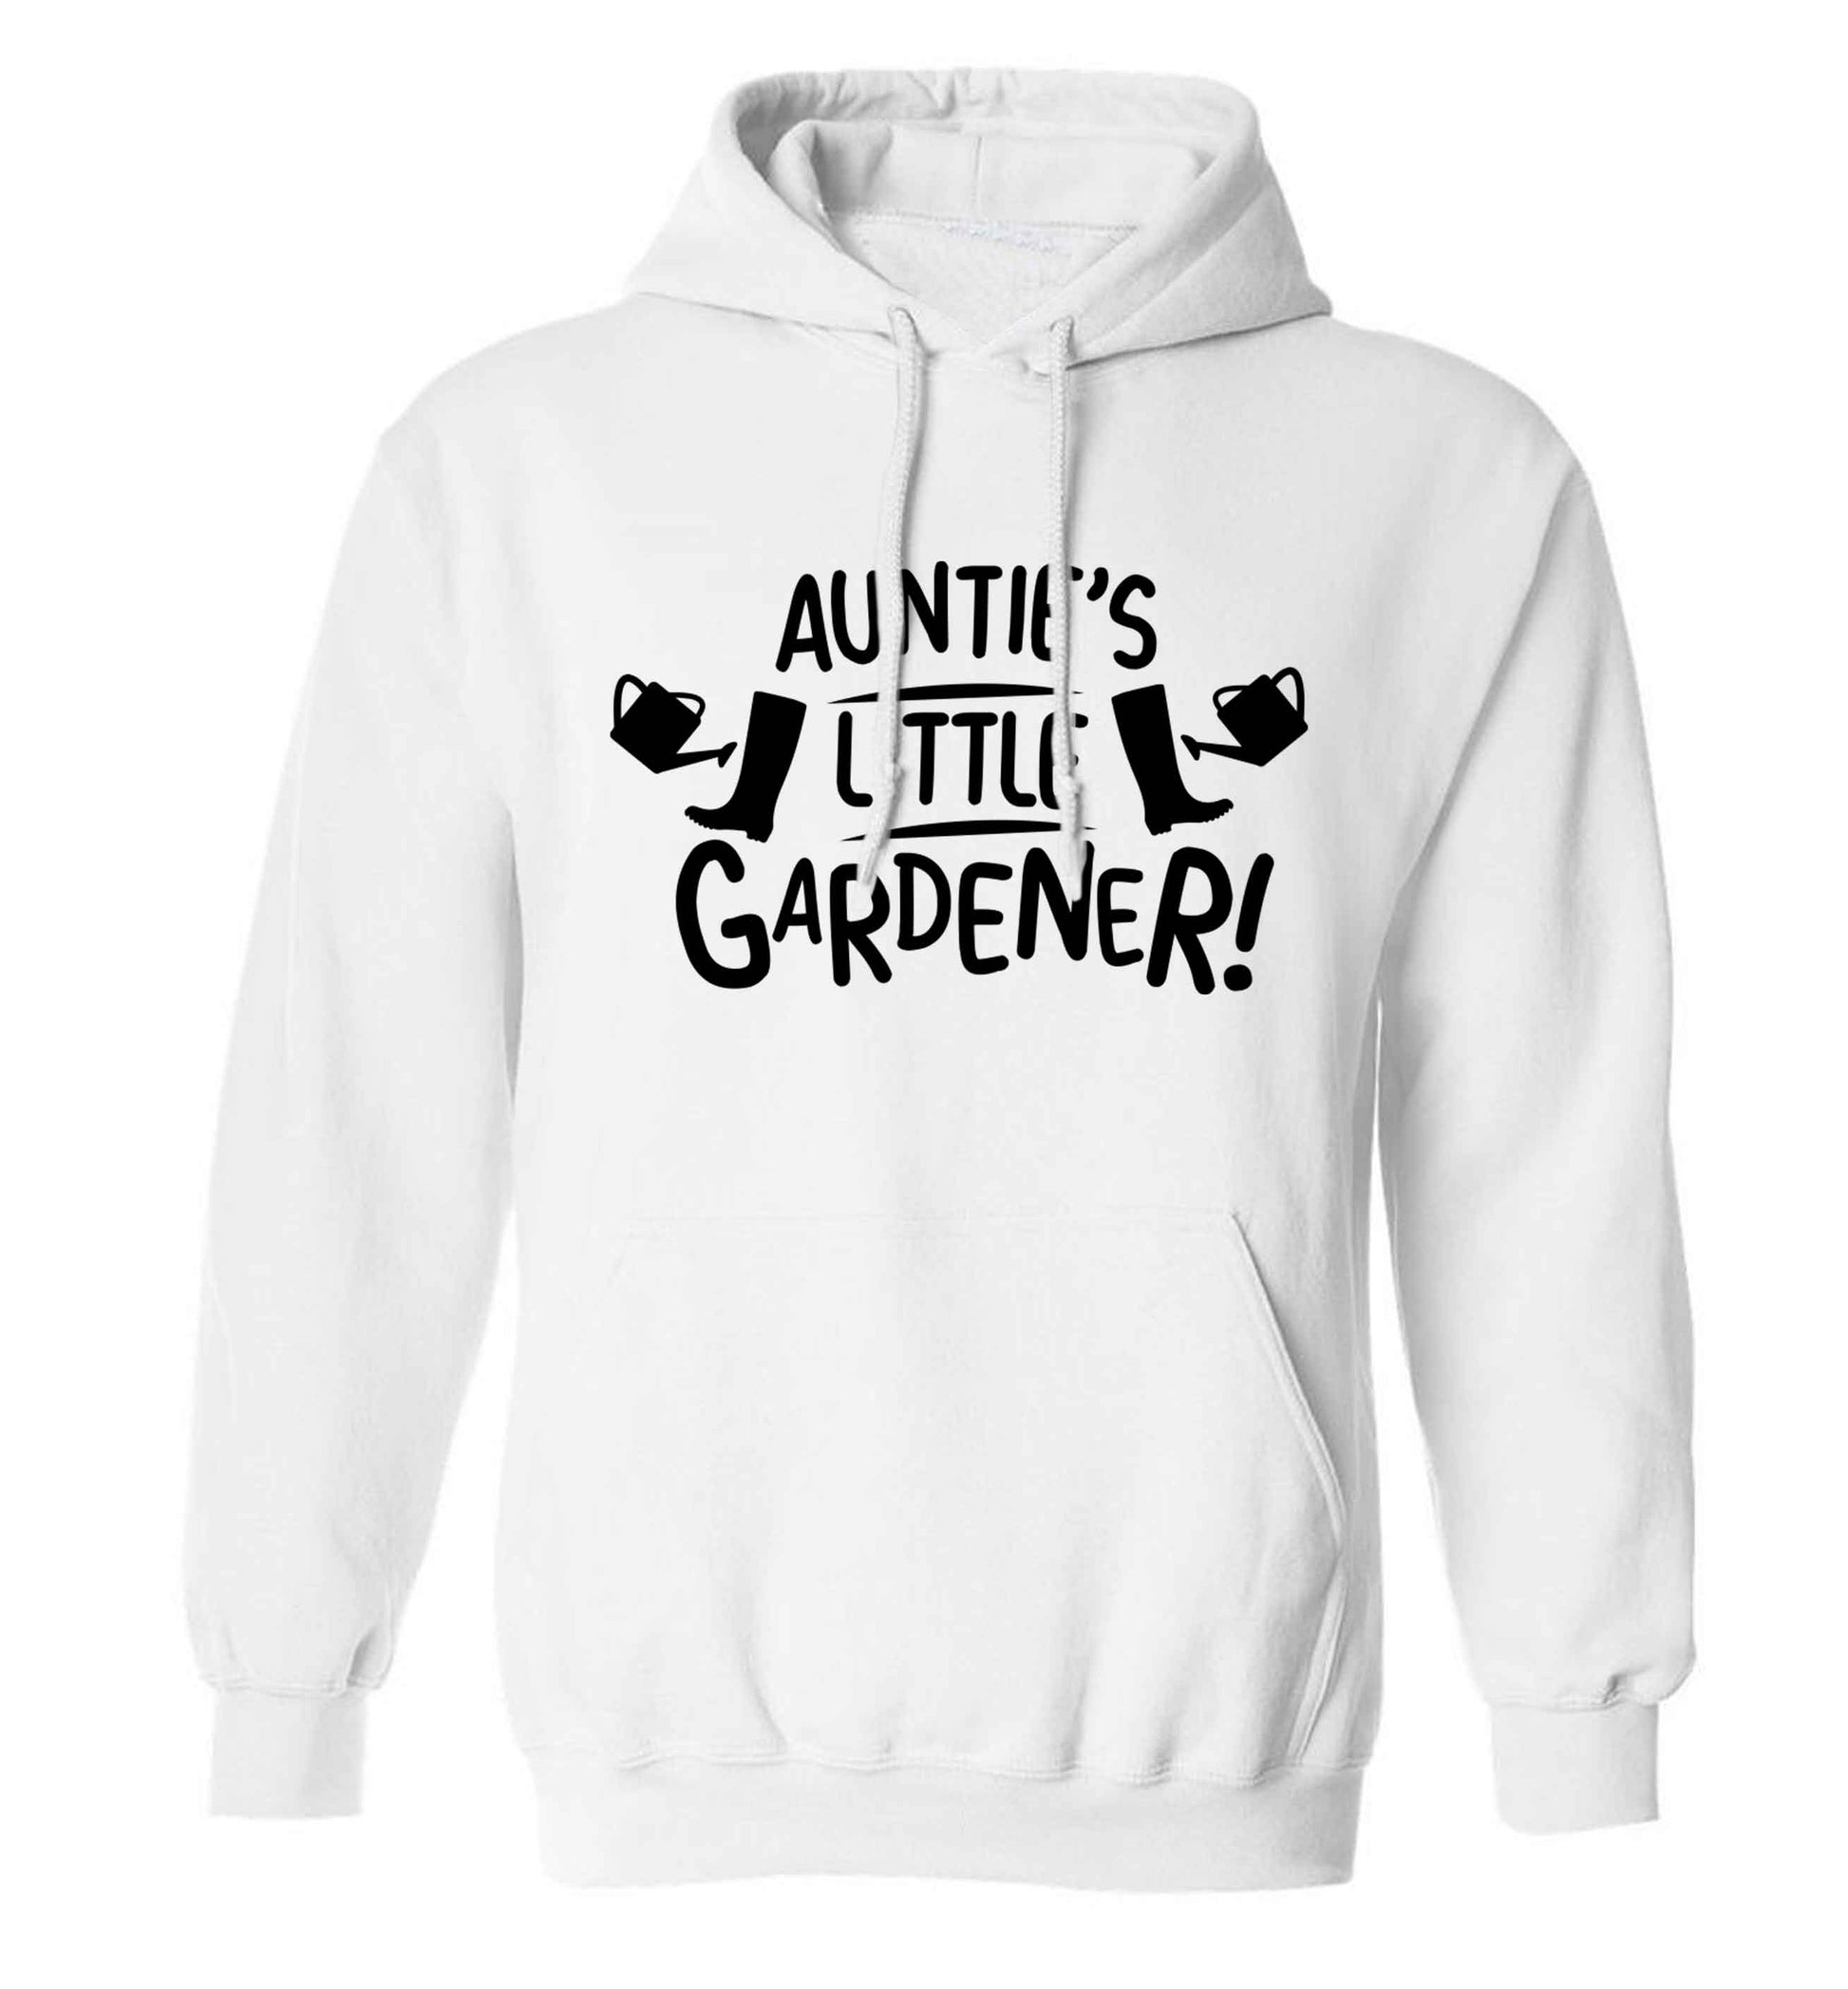 Auntie's little gardener adults unisex white hoodie 2XL